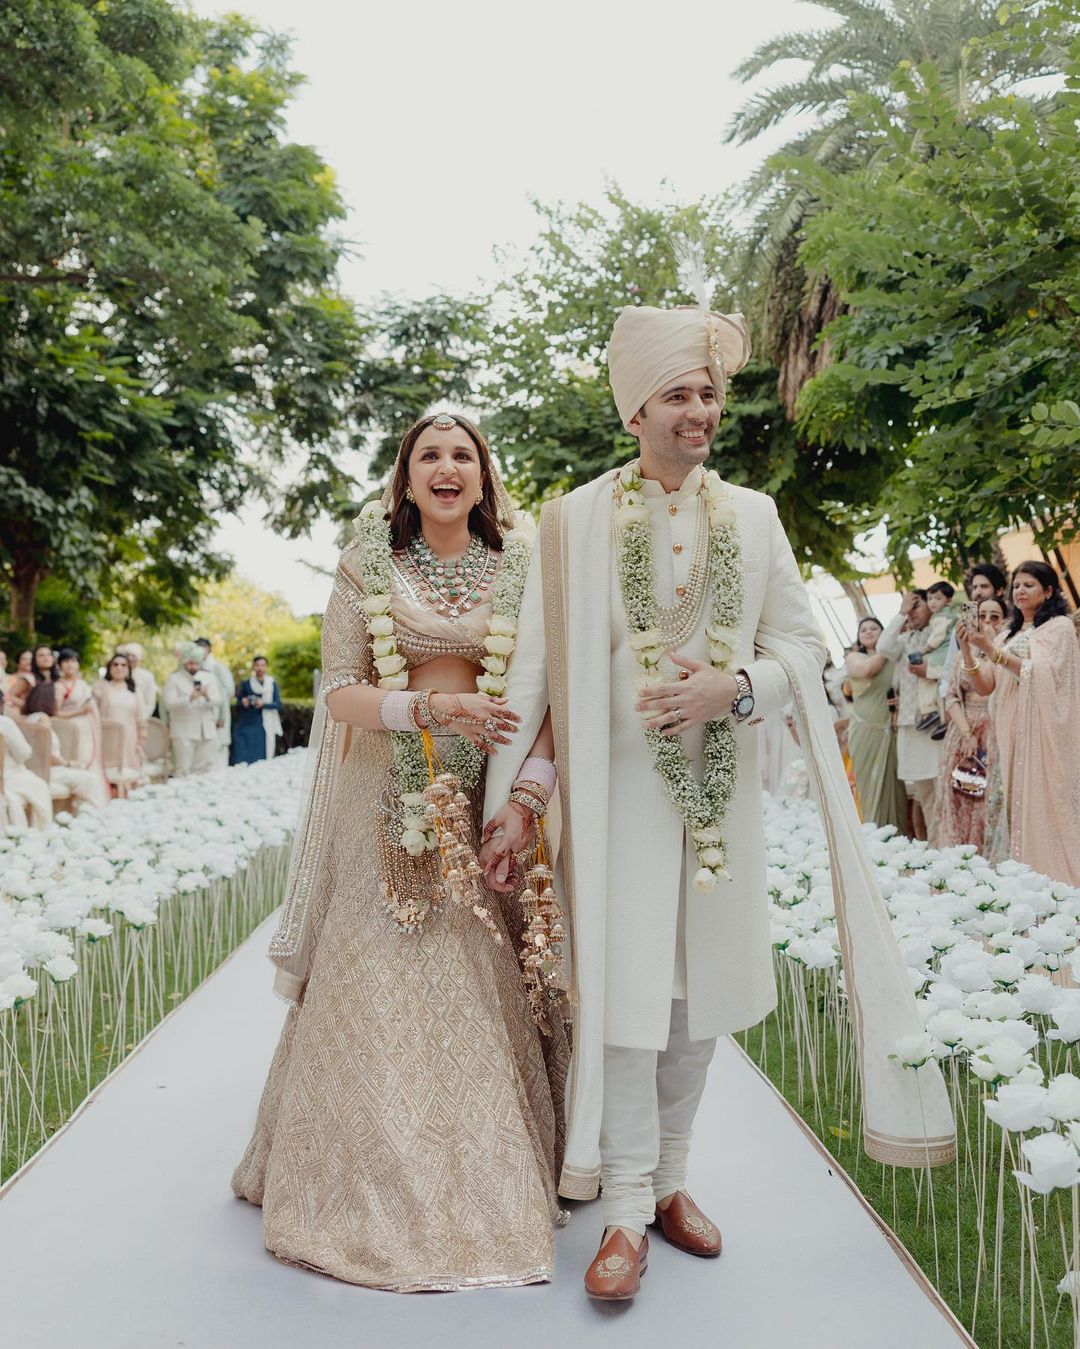 Parineeti-Raghav Wedding First Pic: अपनी शादी में बेहद खूबसूरत दिखे परिणीति चोपड़ा और राघव चड्ढा, वेडिंग की पहली तस्वीरें शेयर कर एक्ट्रेस ने कहा- इस दिन का कब से इंतजार था!